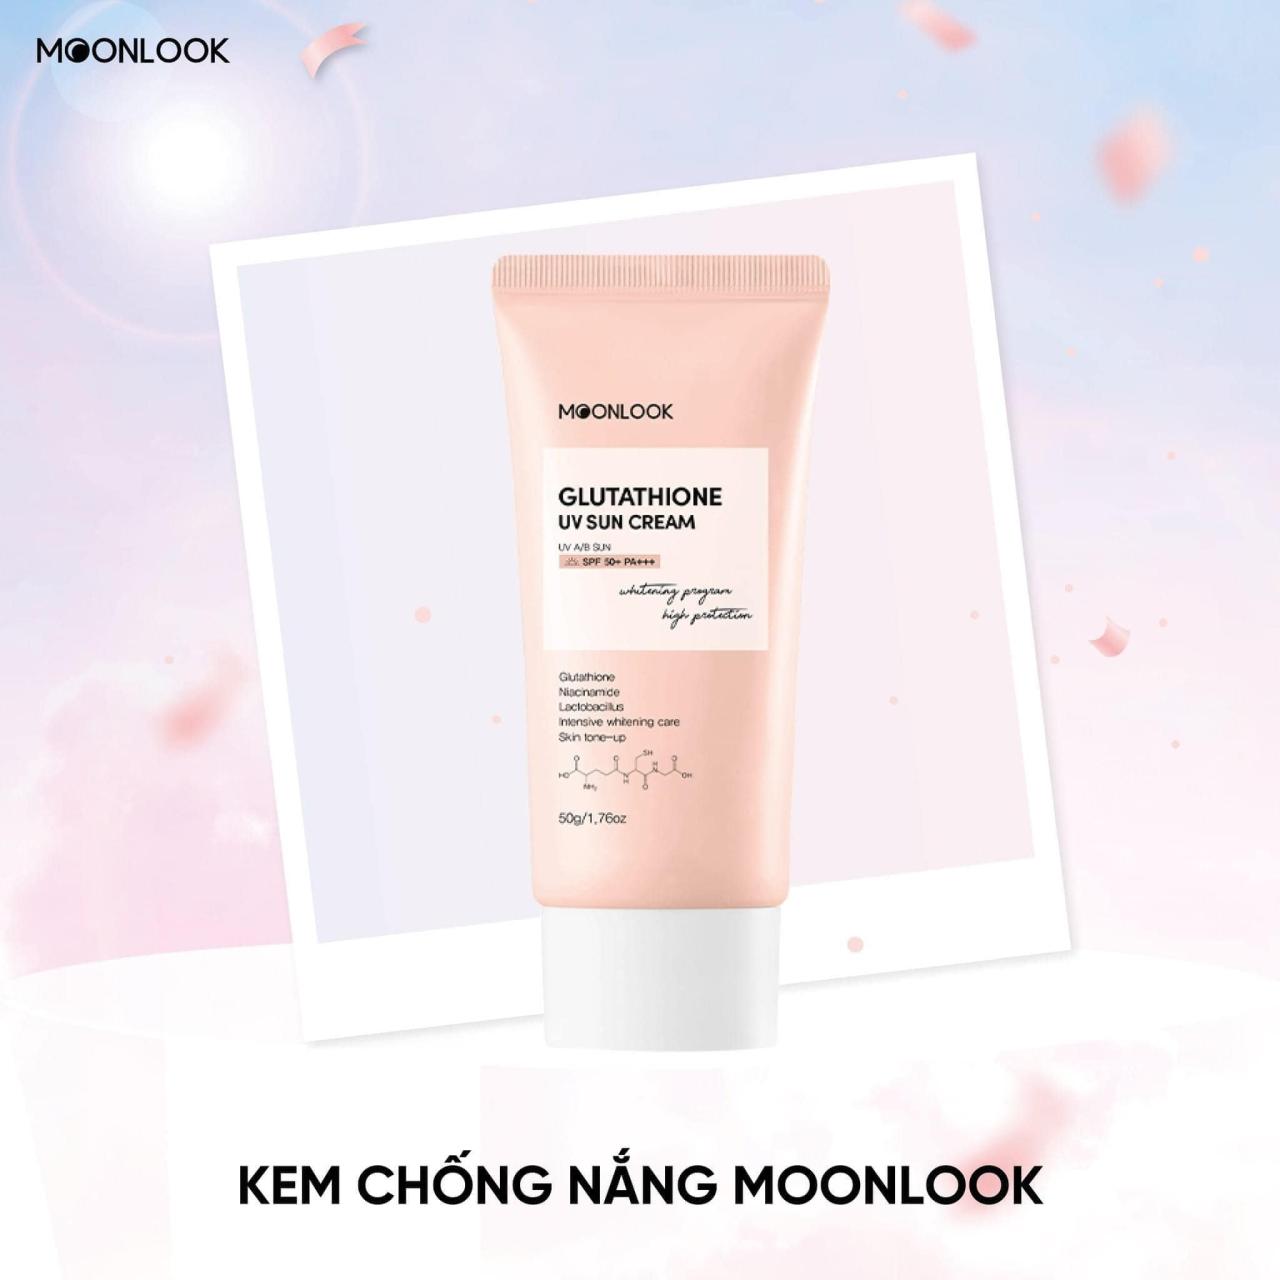 Kem chống nắng Moonlook Hàn Quốc và các kiến thức nên biết để bảo vệ da hiệu quả nhất